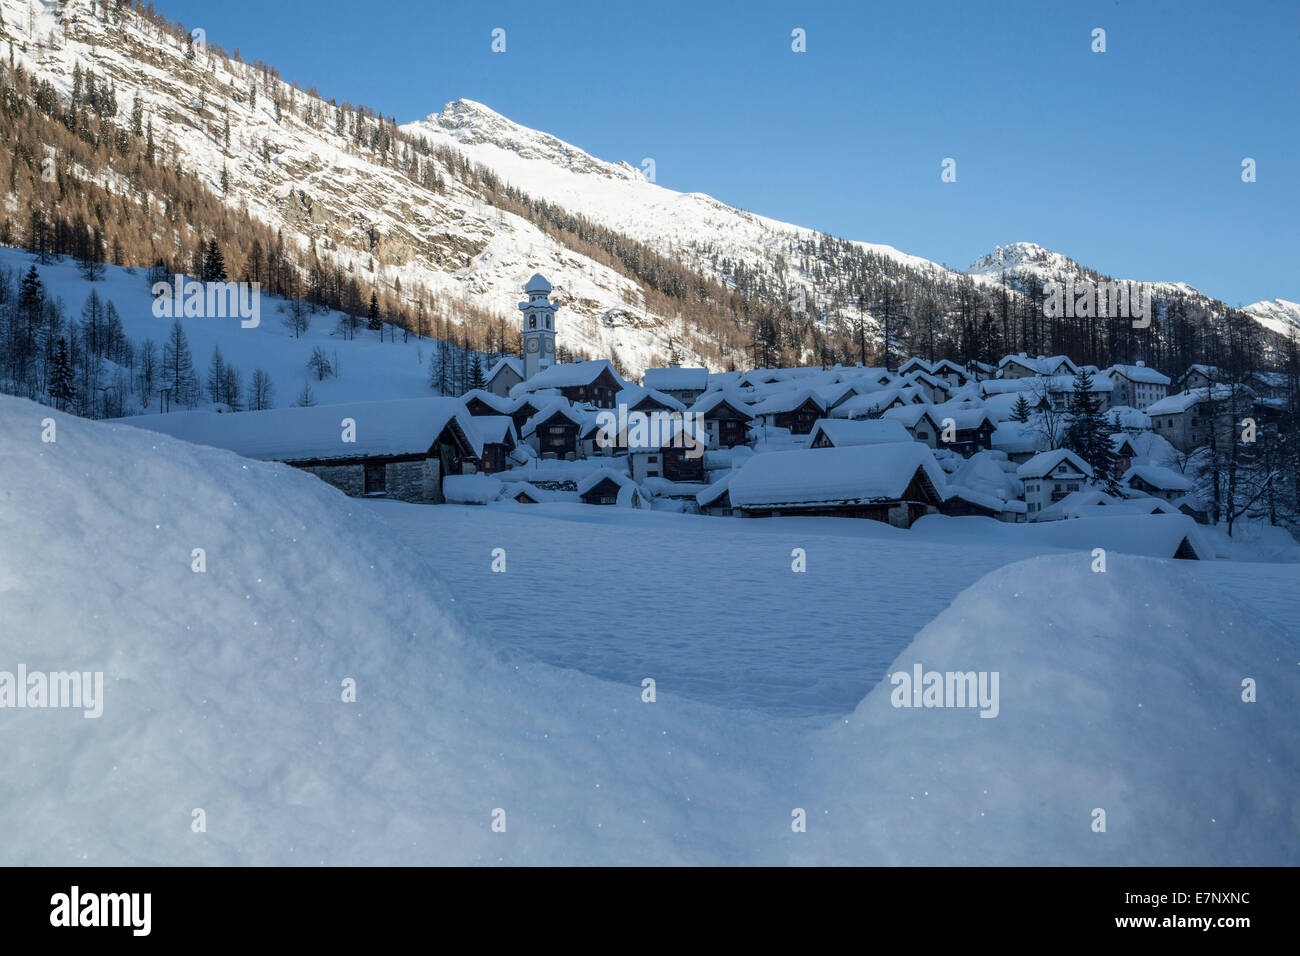 Valle Maggia, Bosco Gurin, inverno, villaggio, neve, in inverno, del cantone Ticino, Svizzera meridionale, Svizzera, Europa Foto Stock